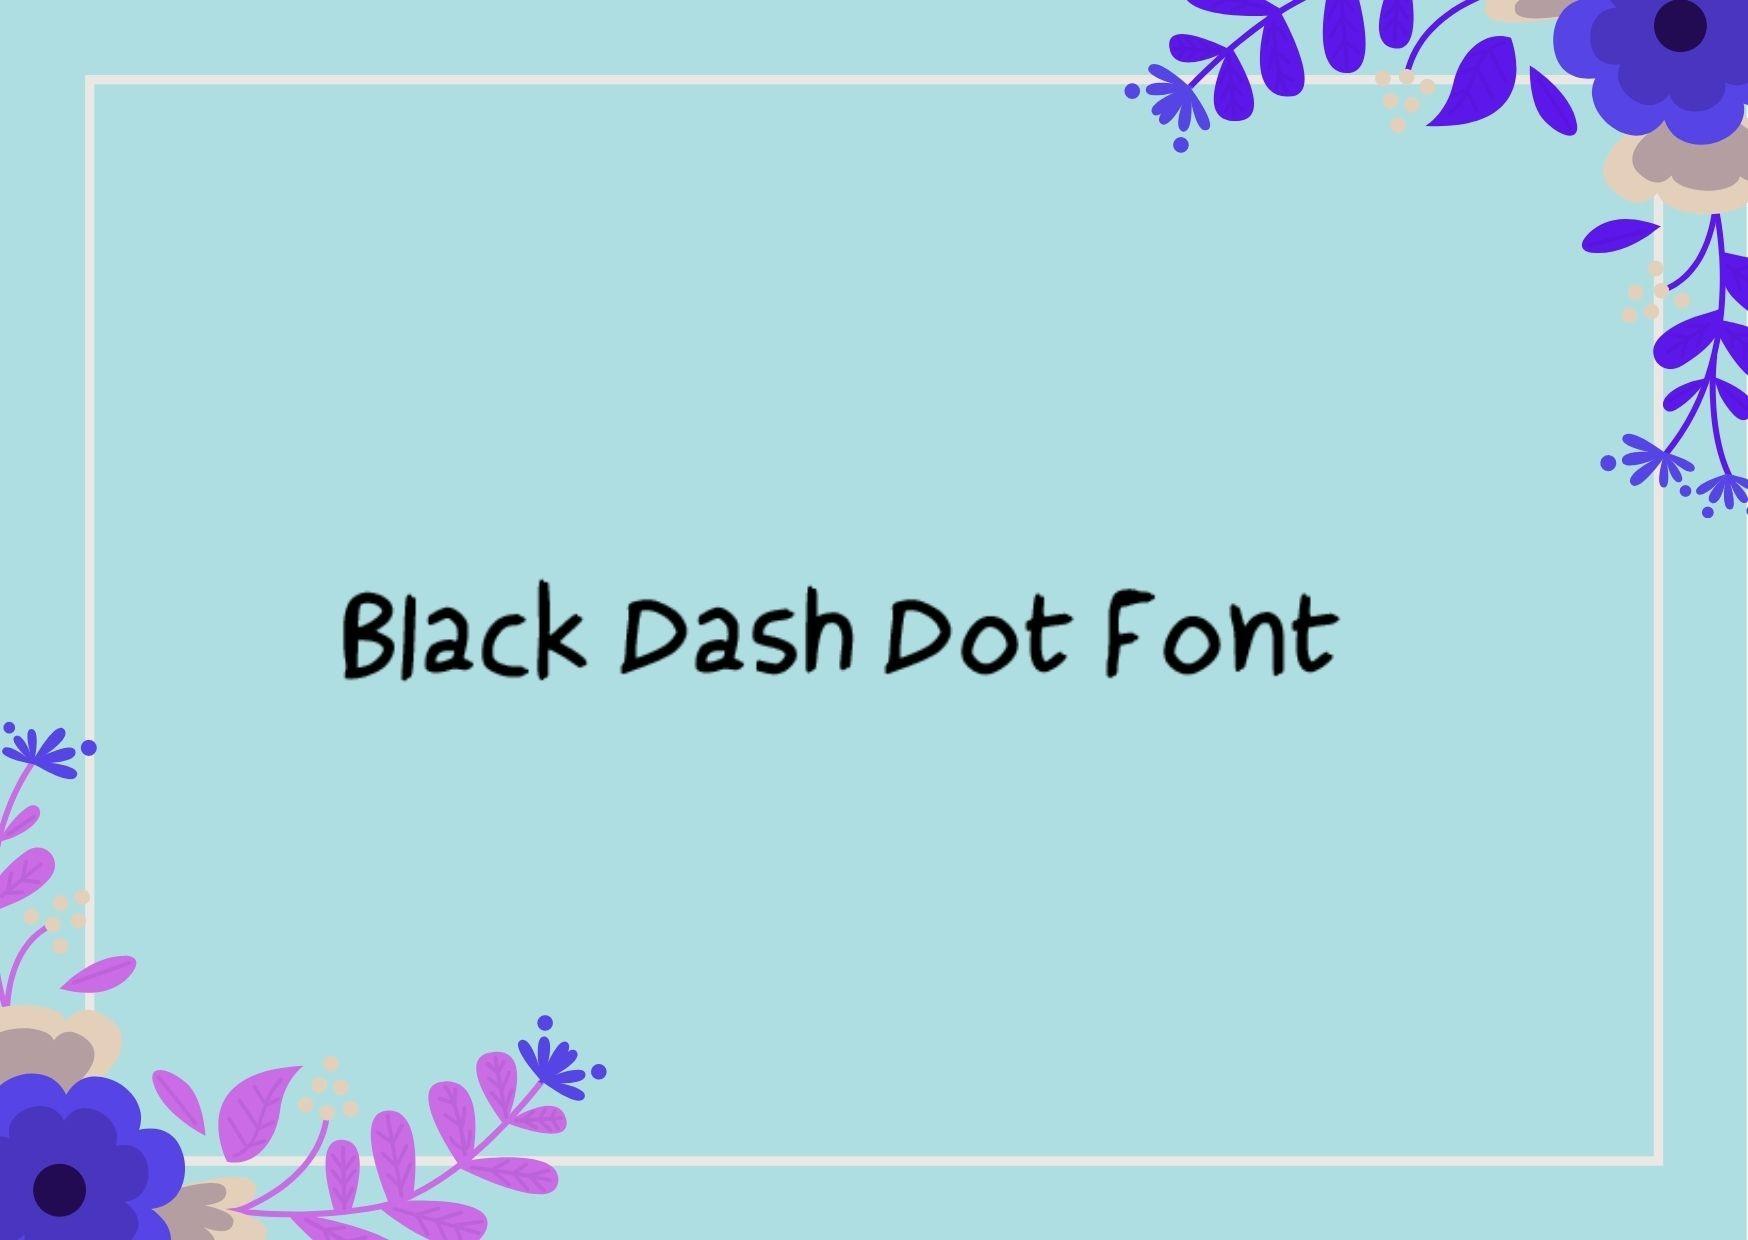 Black Dash Dot Font